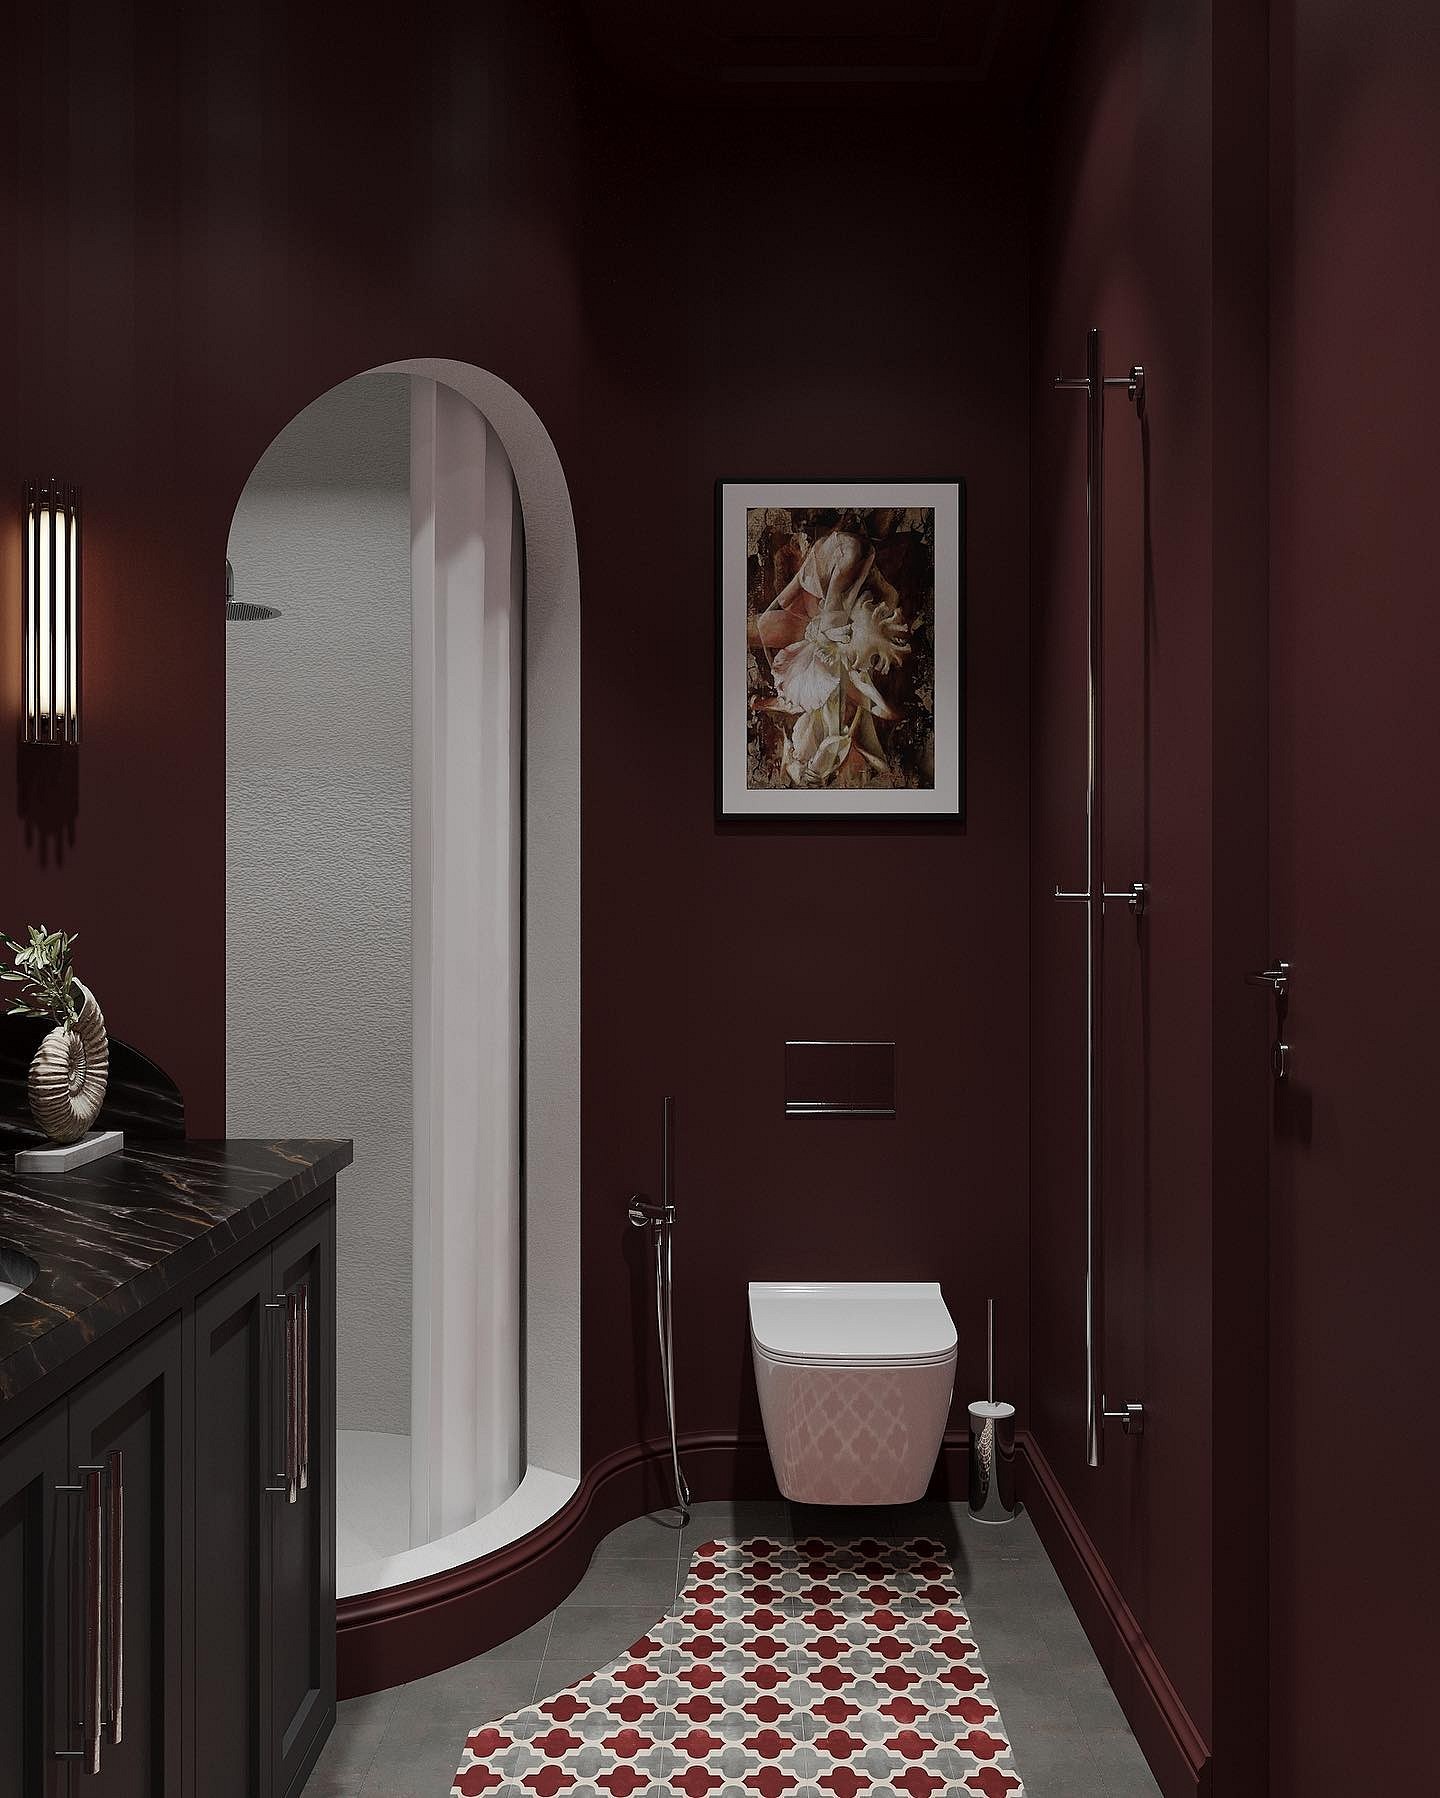 9 необычных решений для ванной комнаты из проектов дизайнеров1